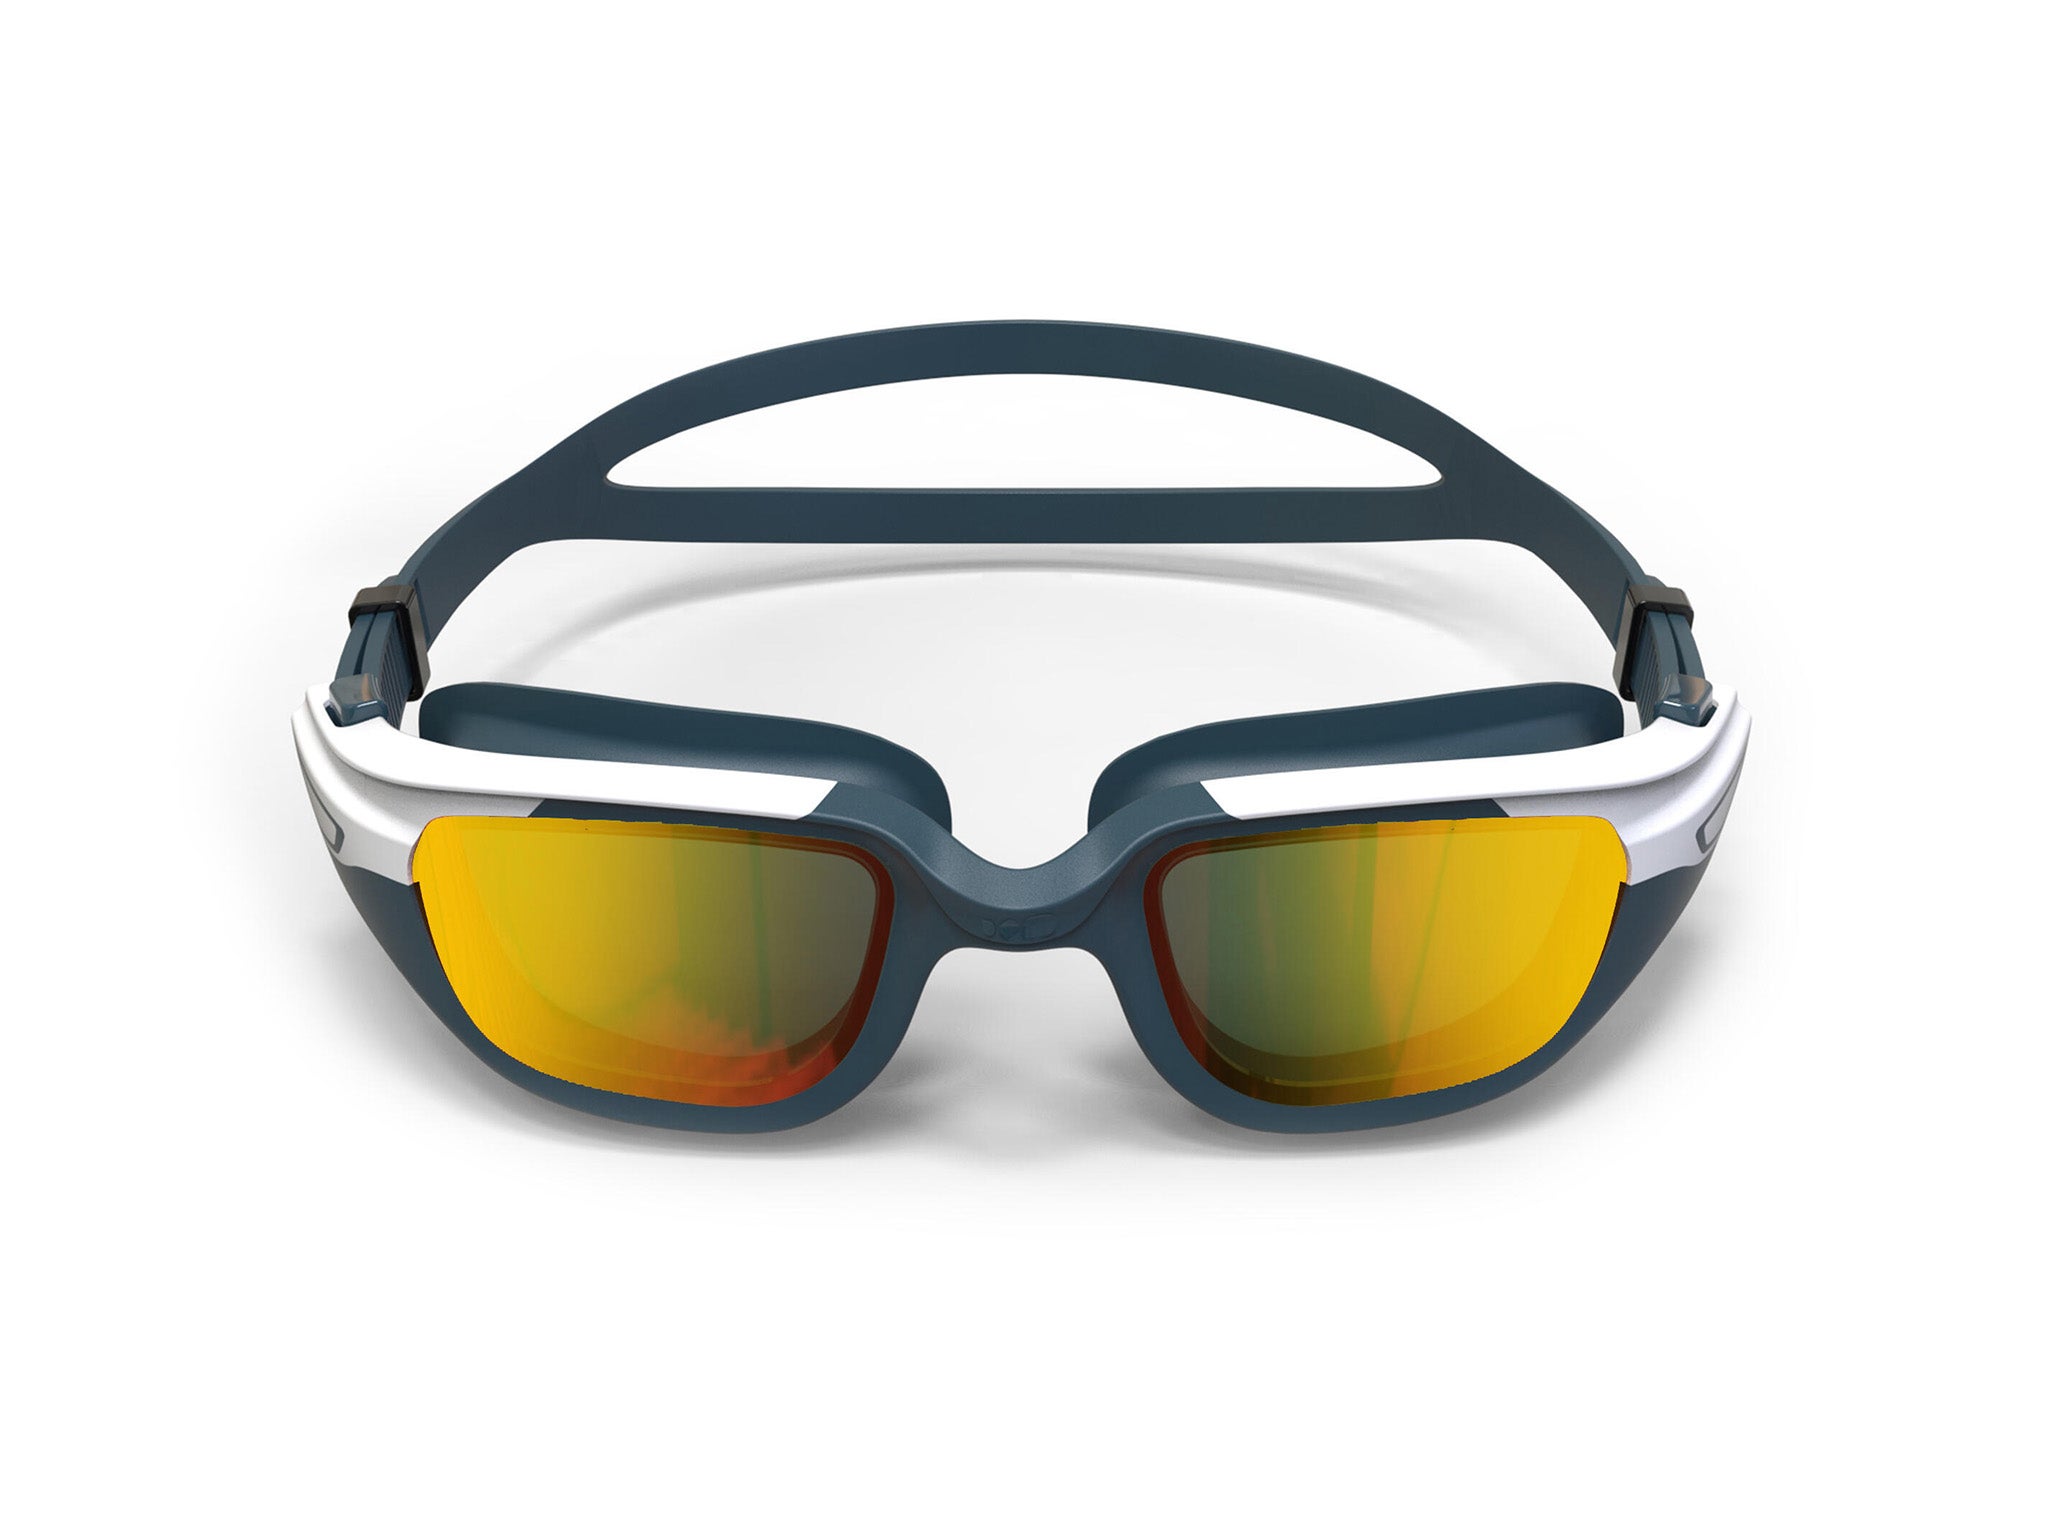 Nabaiji spirit 500 kids junior swimming goggles with mirrored lenses